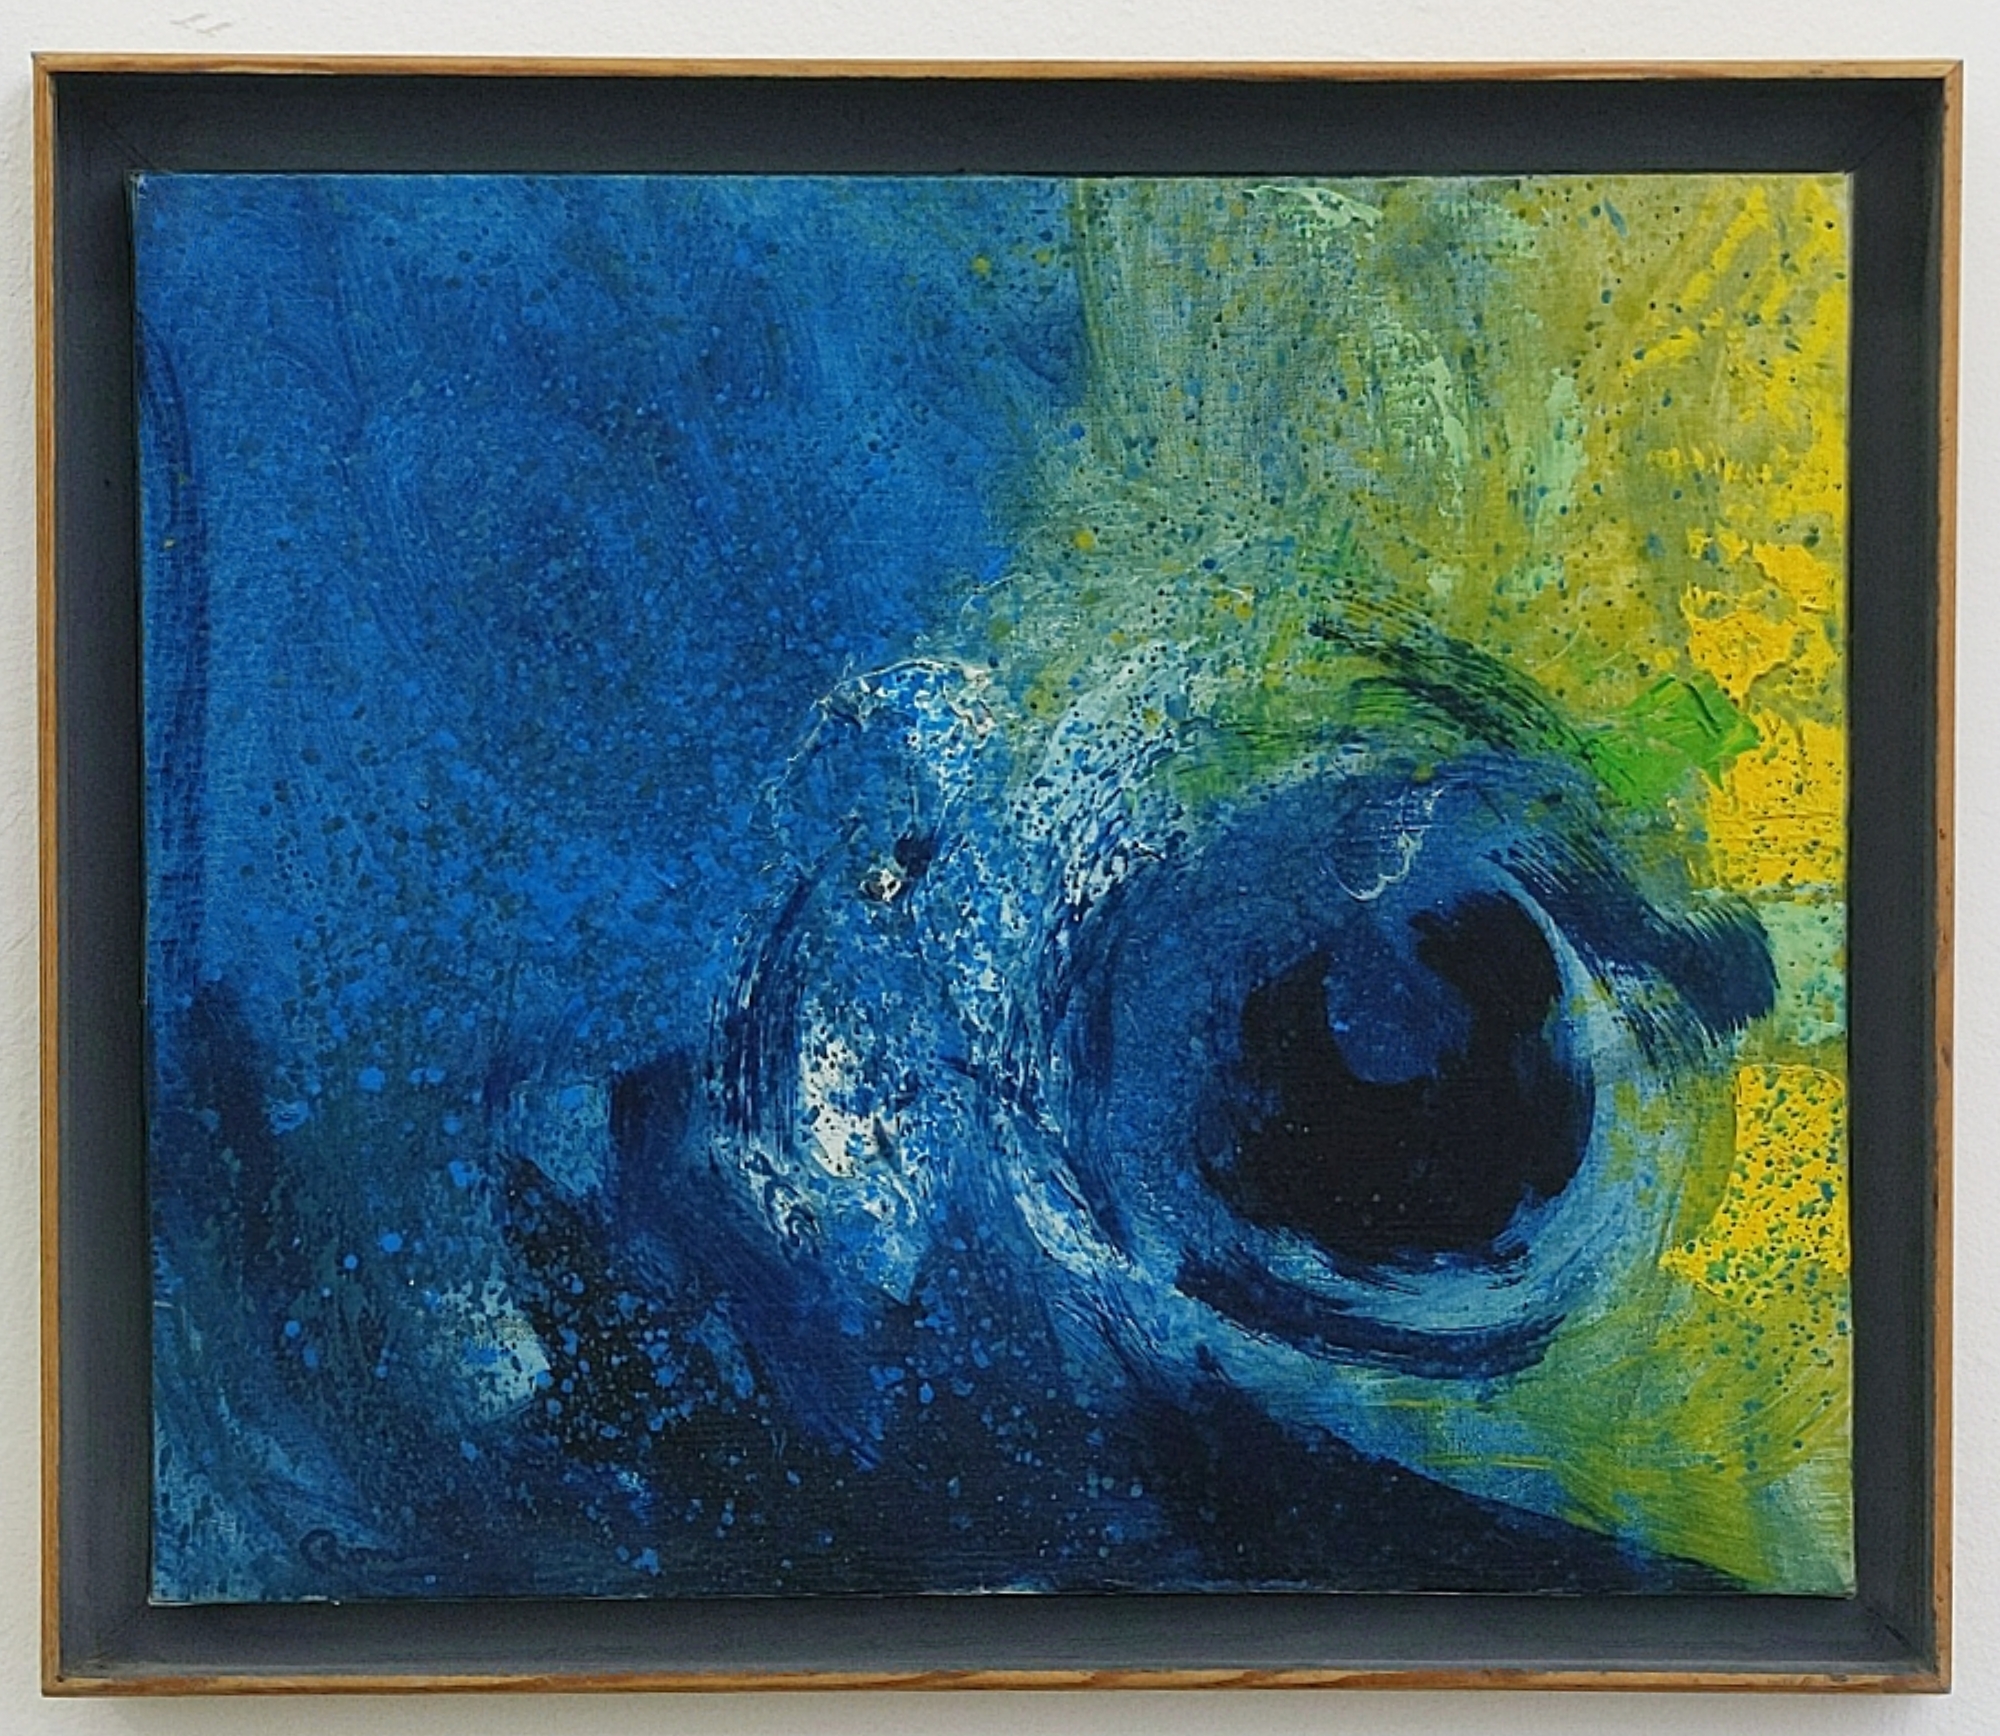 "Ciel IV", 1984, olja på duk, 52 x 61 cm	